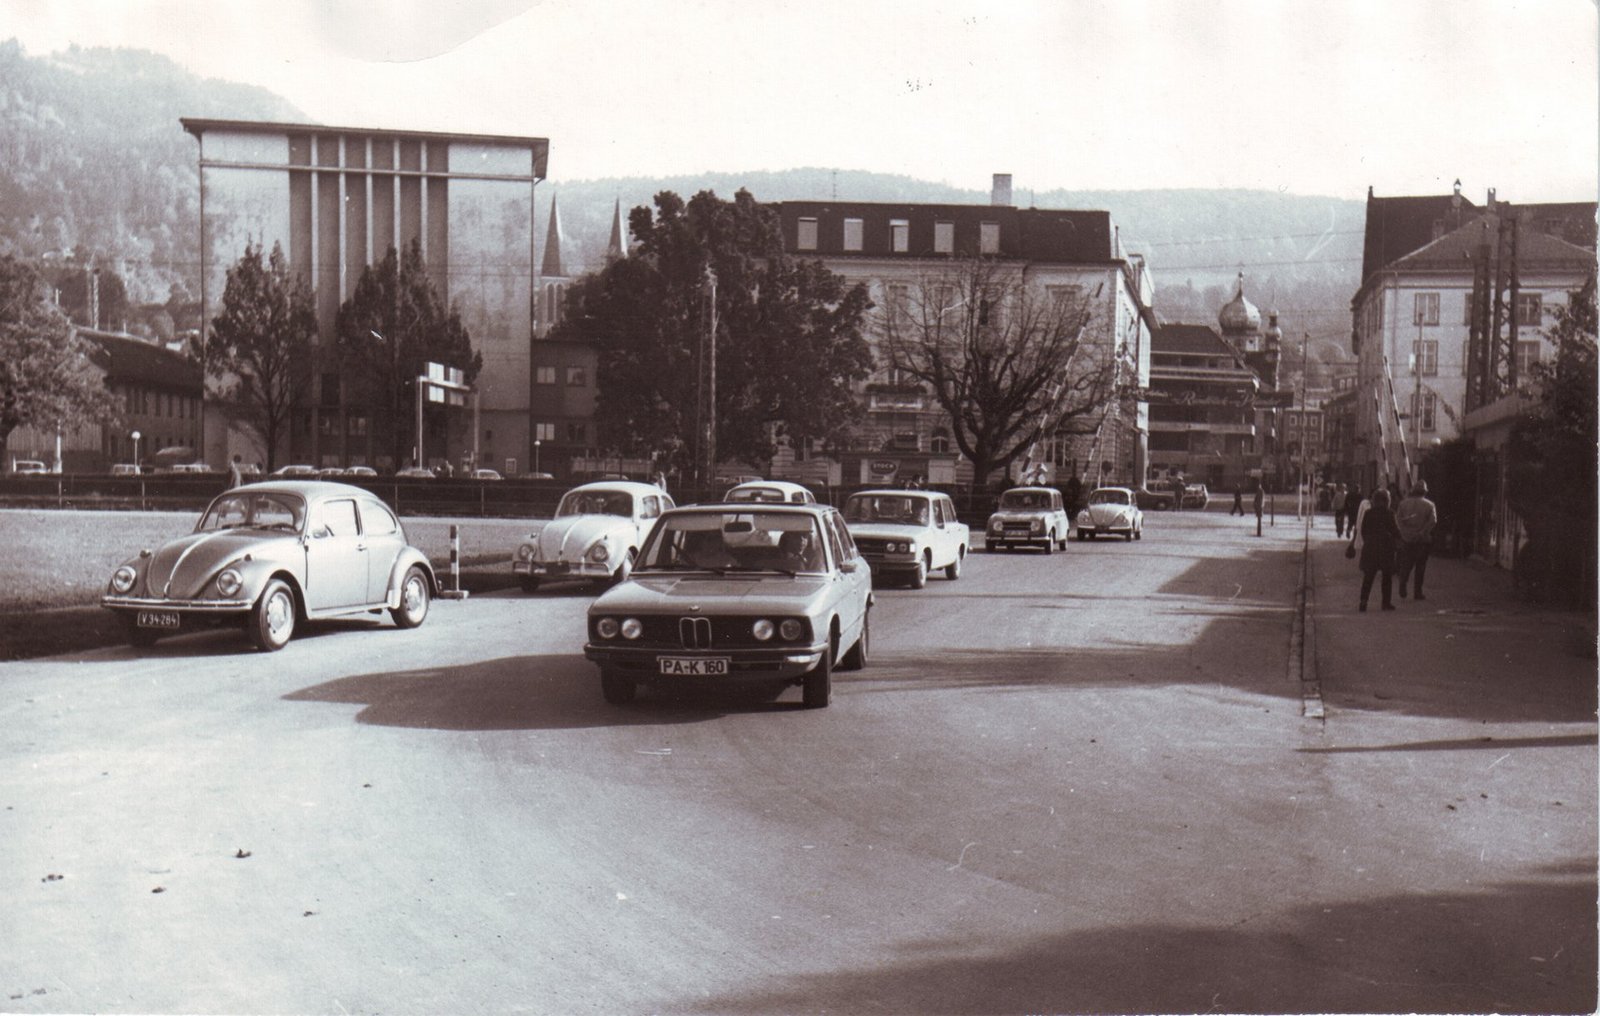 Alte Seeanlagen in Bregenz 1973, Autos fahren auf der Straße und es gibt Gebäude im Hintergrund